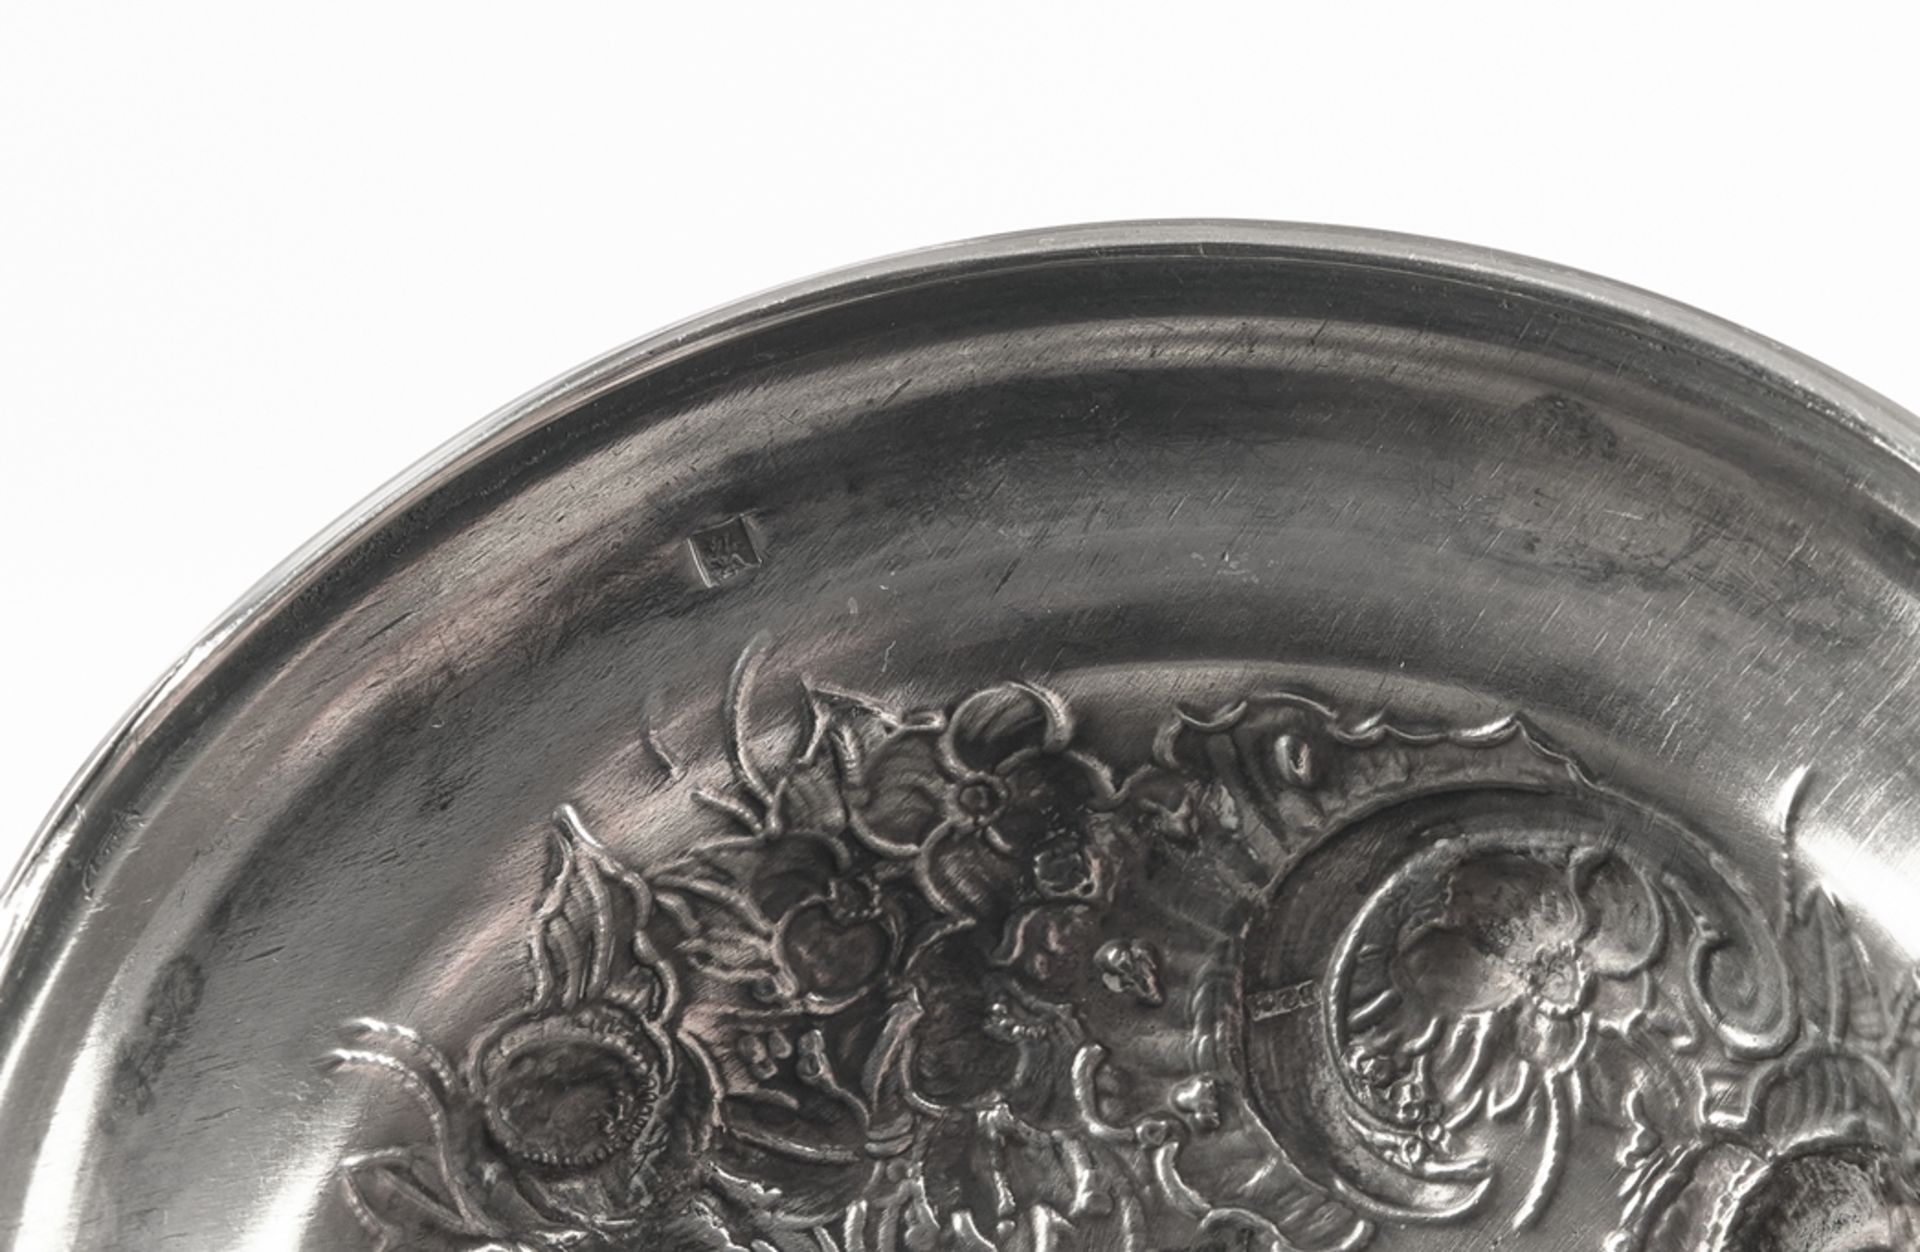 Lidded Goblet, silver, Netherlands, 1857/1859, maker's mark VK 74, moulded bowl on shaft and round  - Image 4 of 4